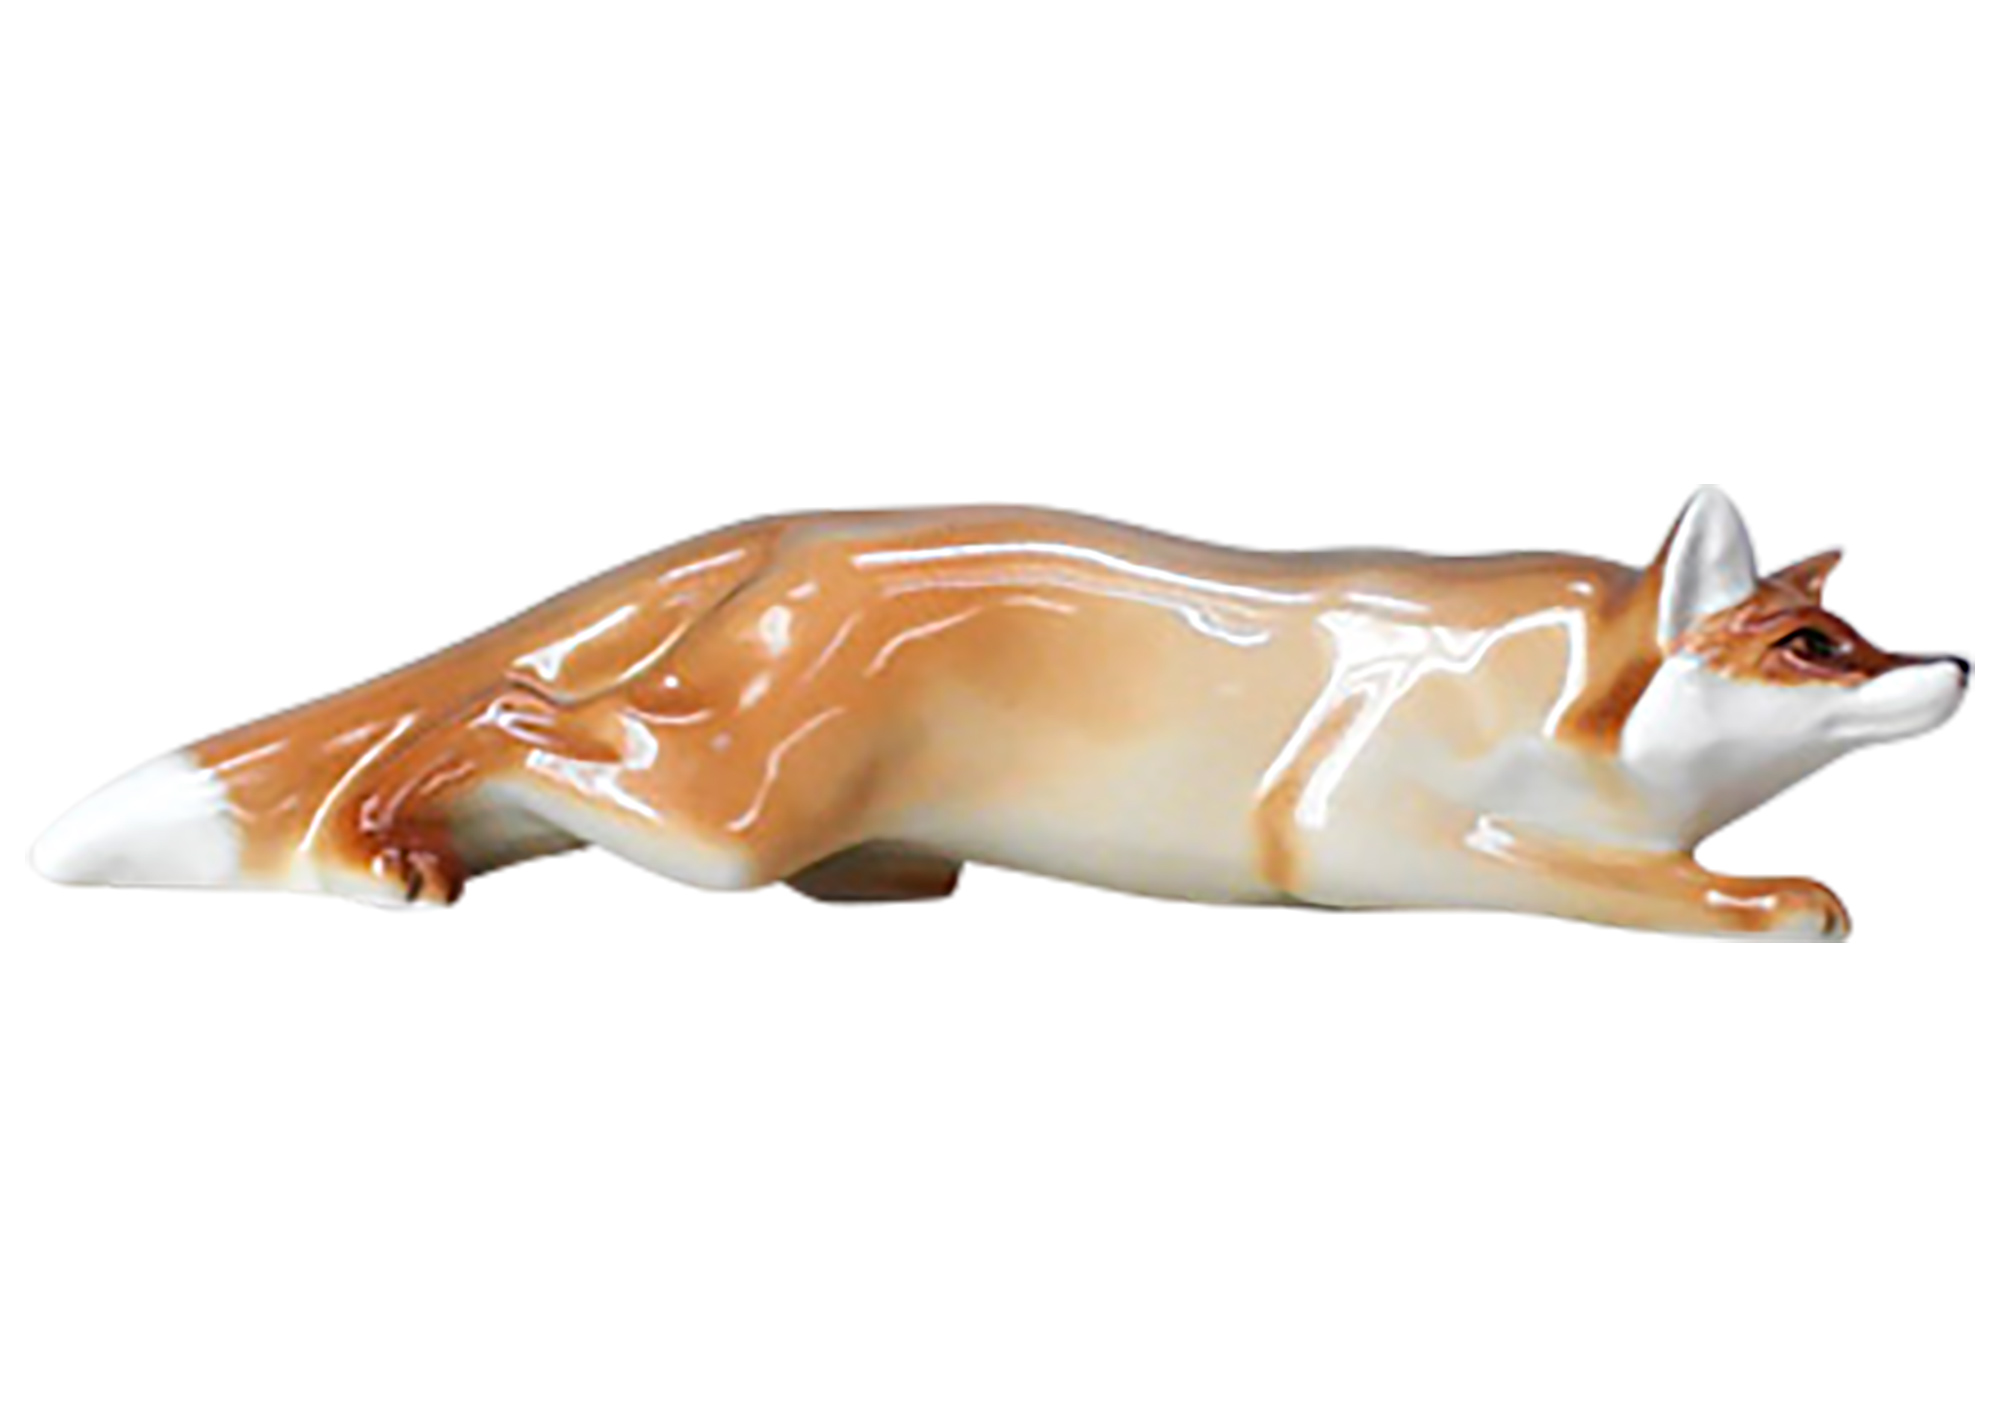 Buy Slinking Fox Figurine at GoldenCockerel.com